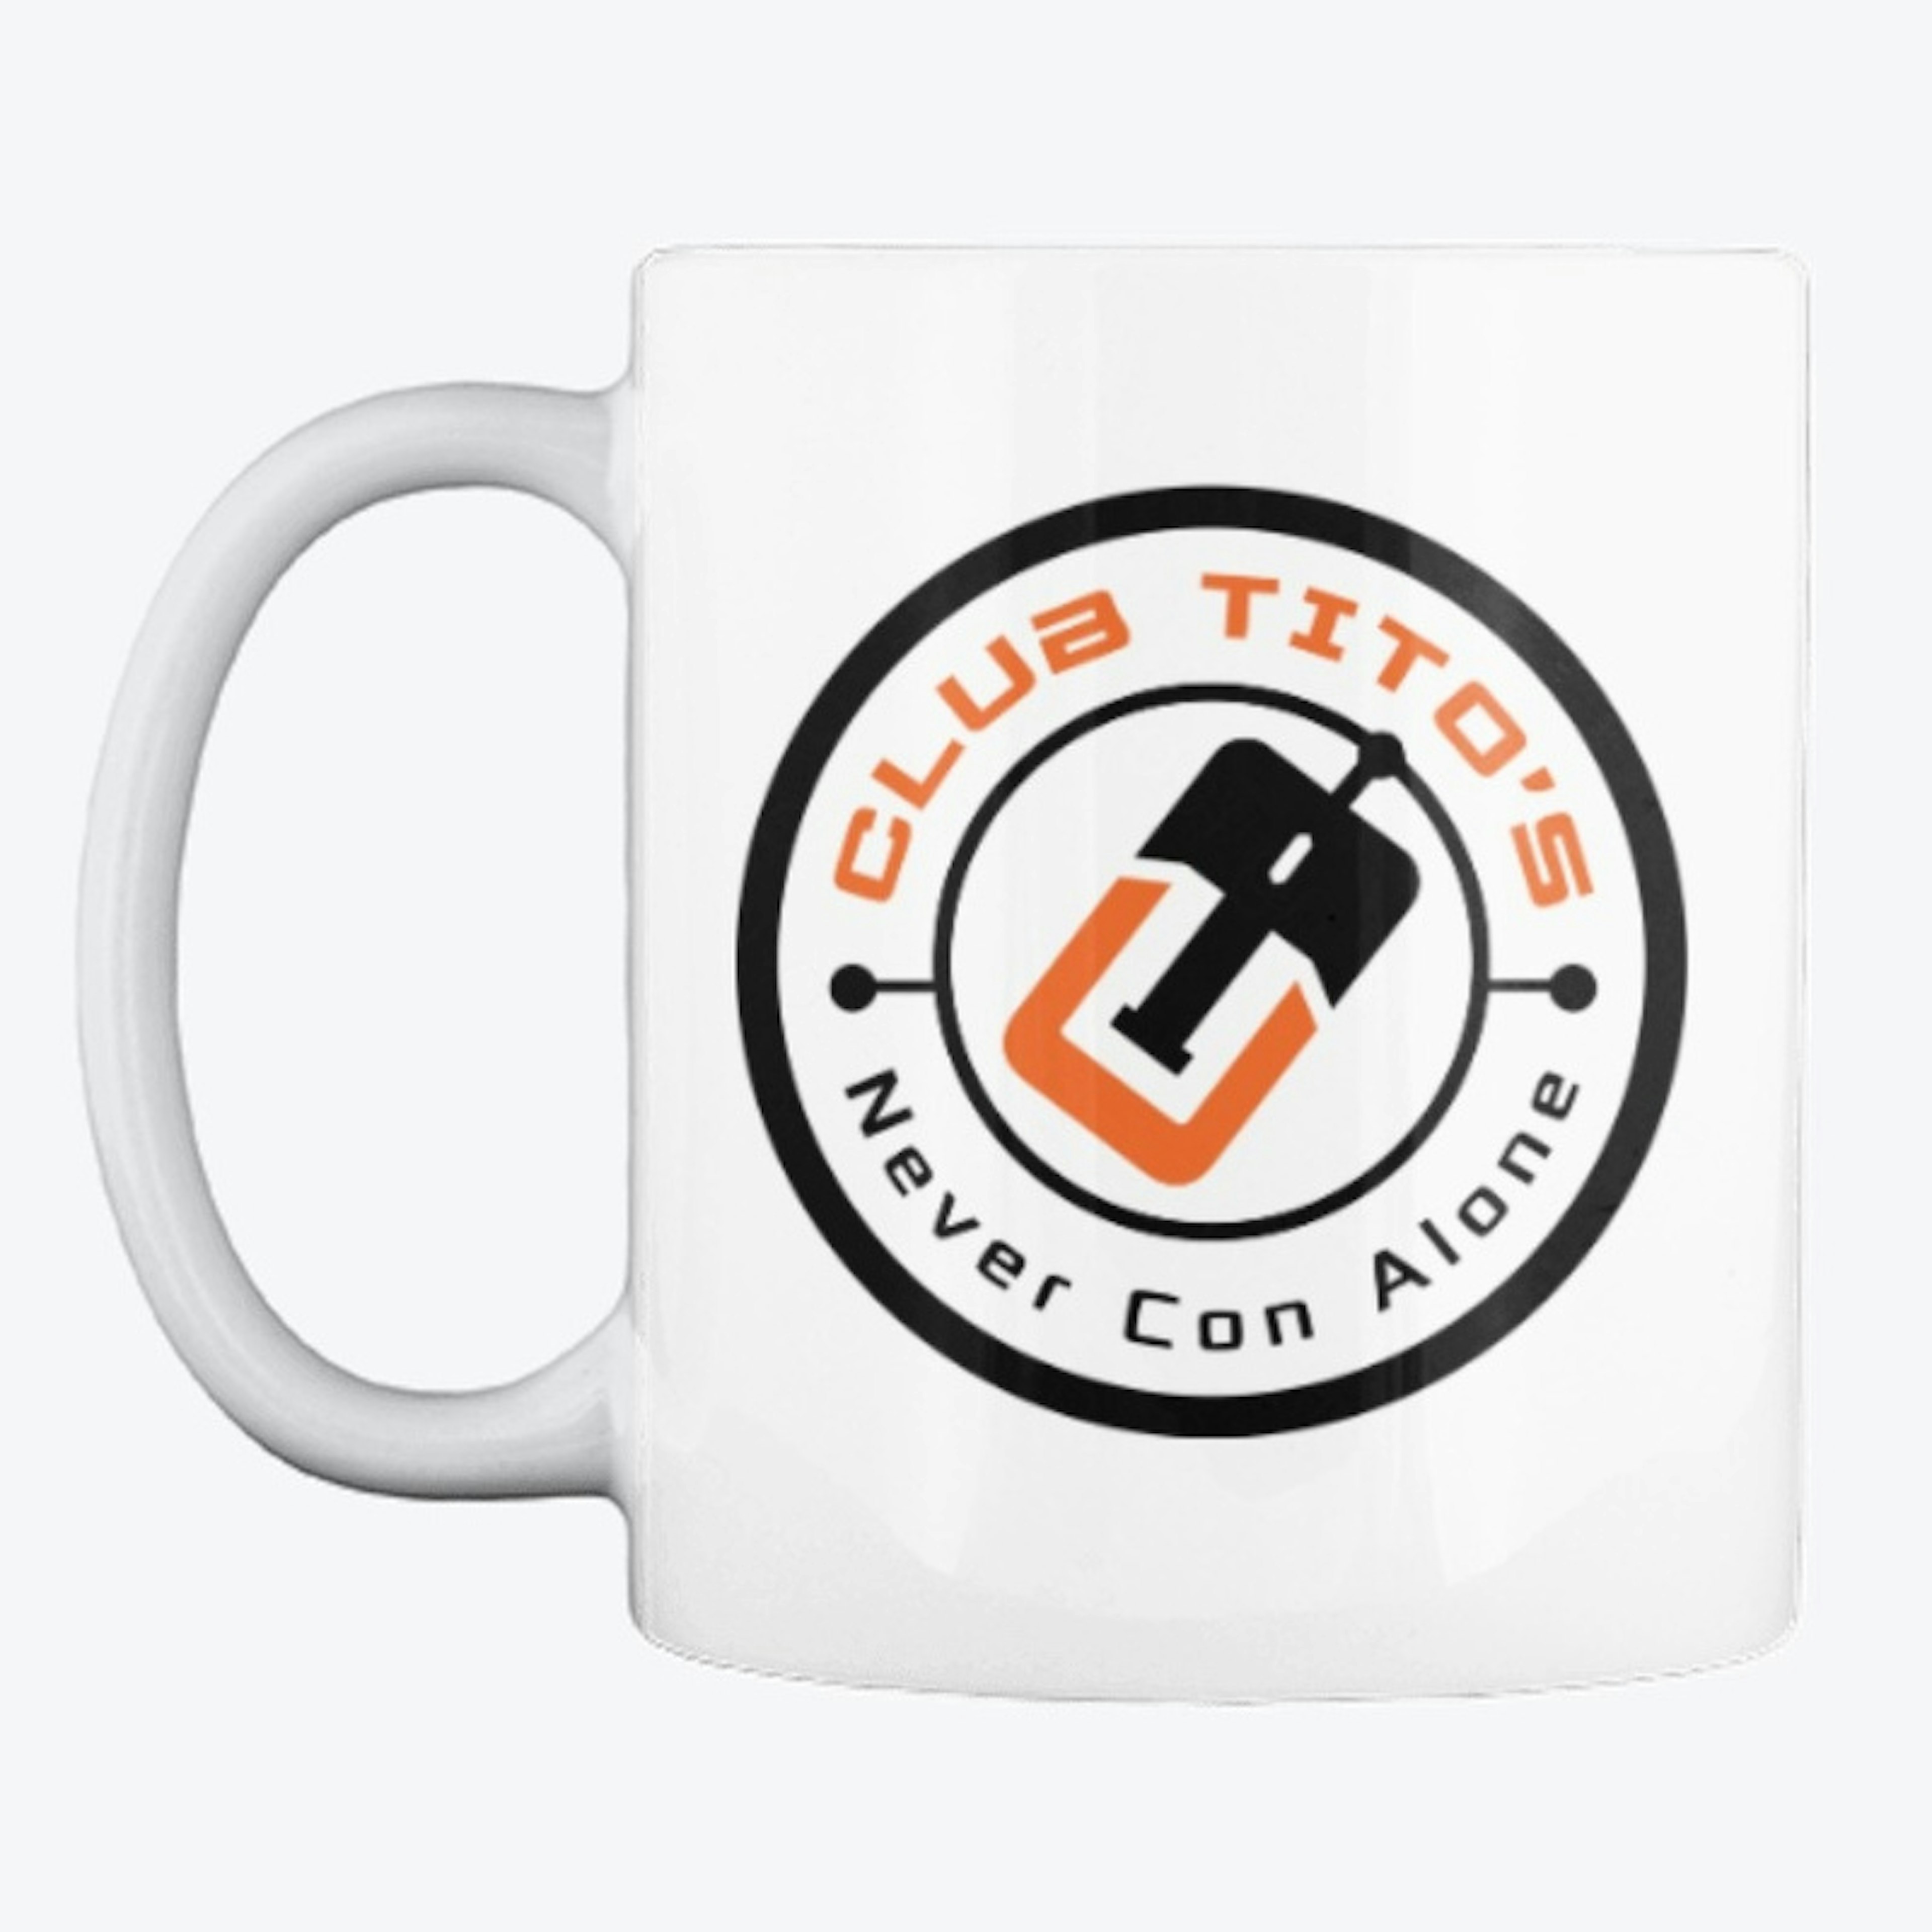 Mug with Iconic Black/Orange logo